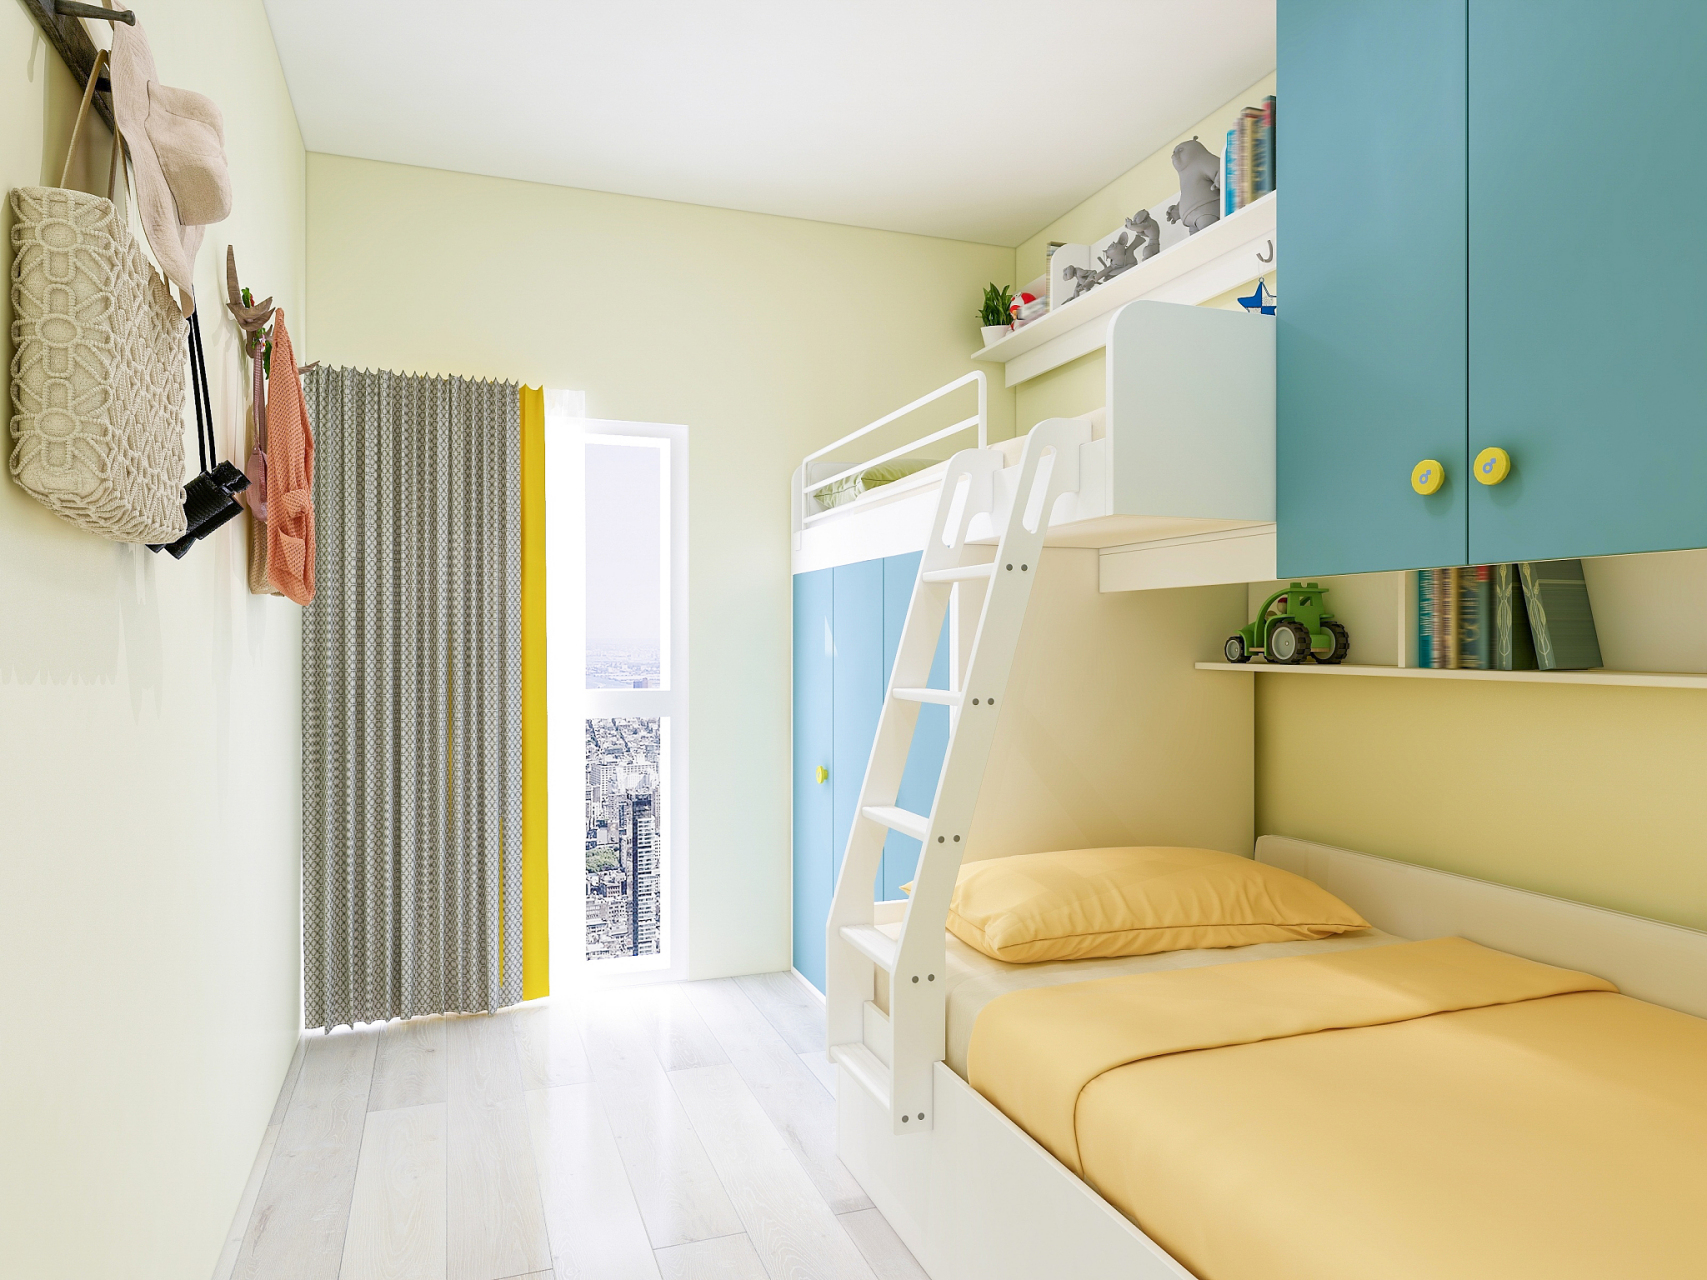 儿童房装修设计攻略 高低床是巧妙利用空间的一种方式,可以将床的上下